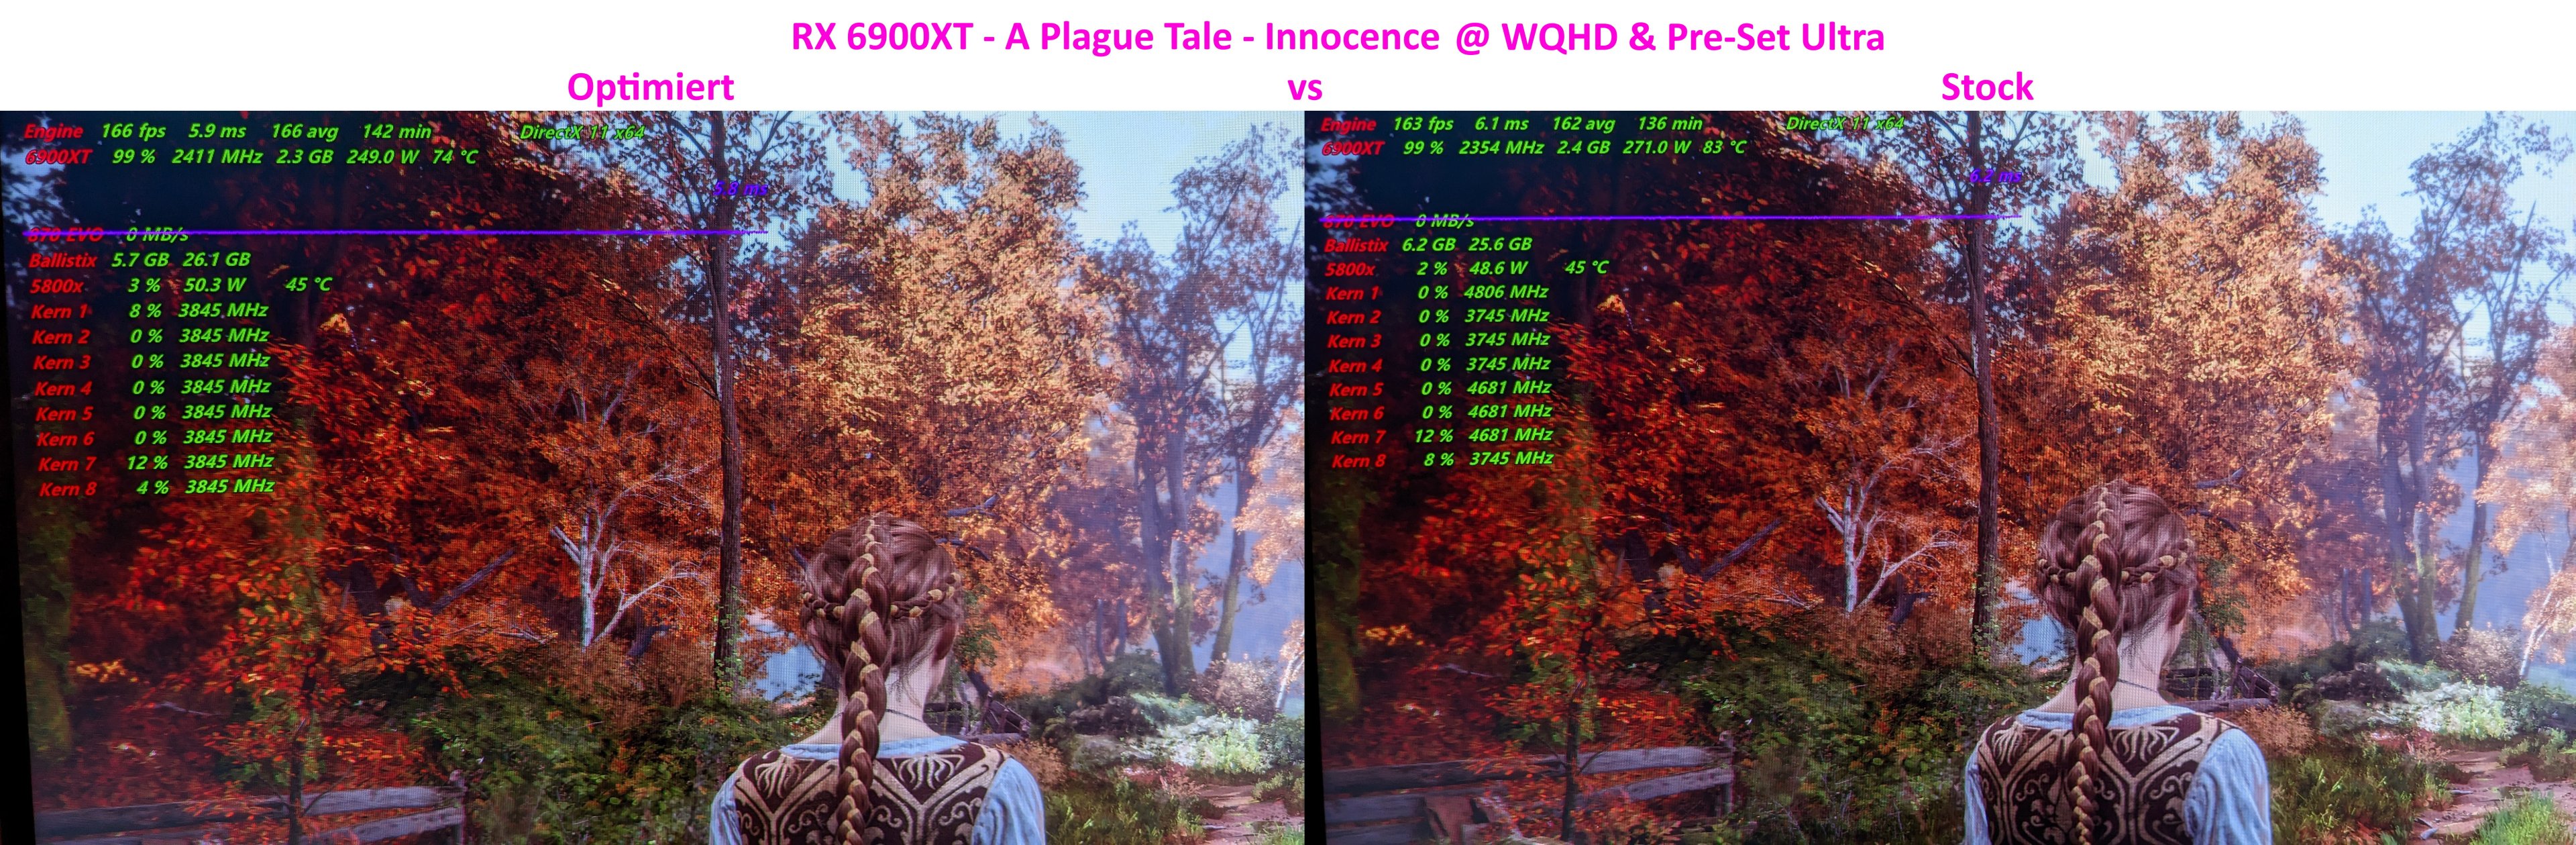 RX 6900XT - A Plague Tale - Innocence.jpg